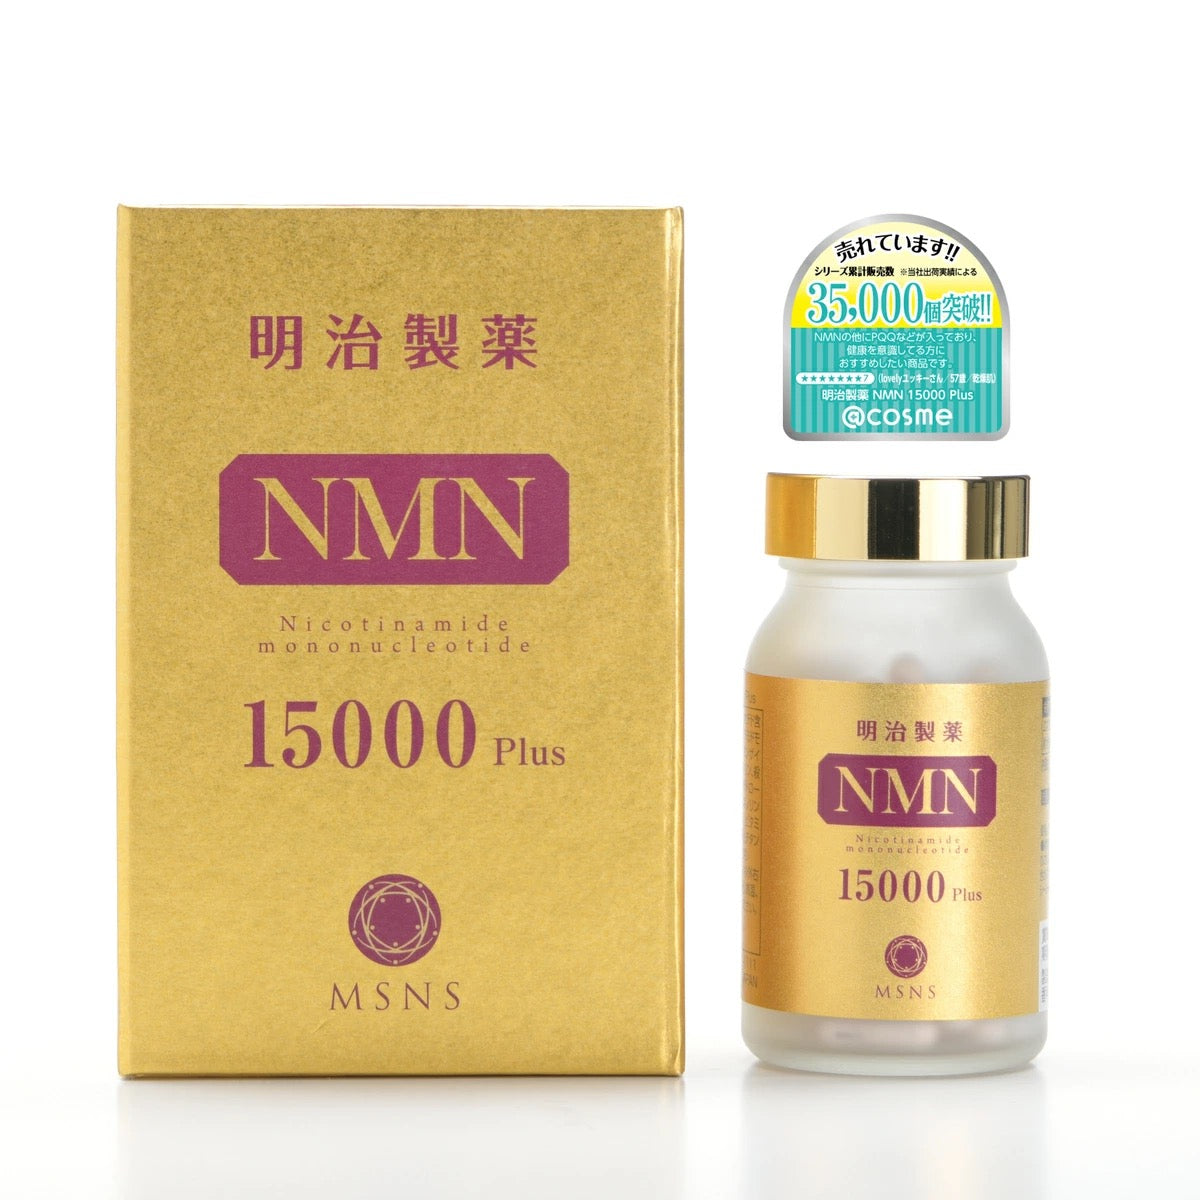 明治制药NMN15000 Plus